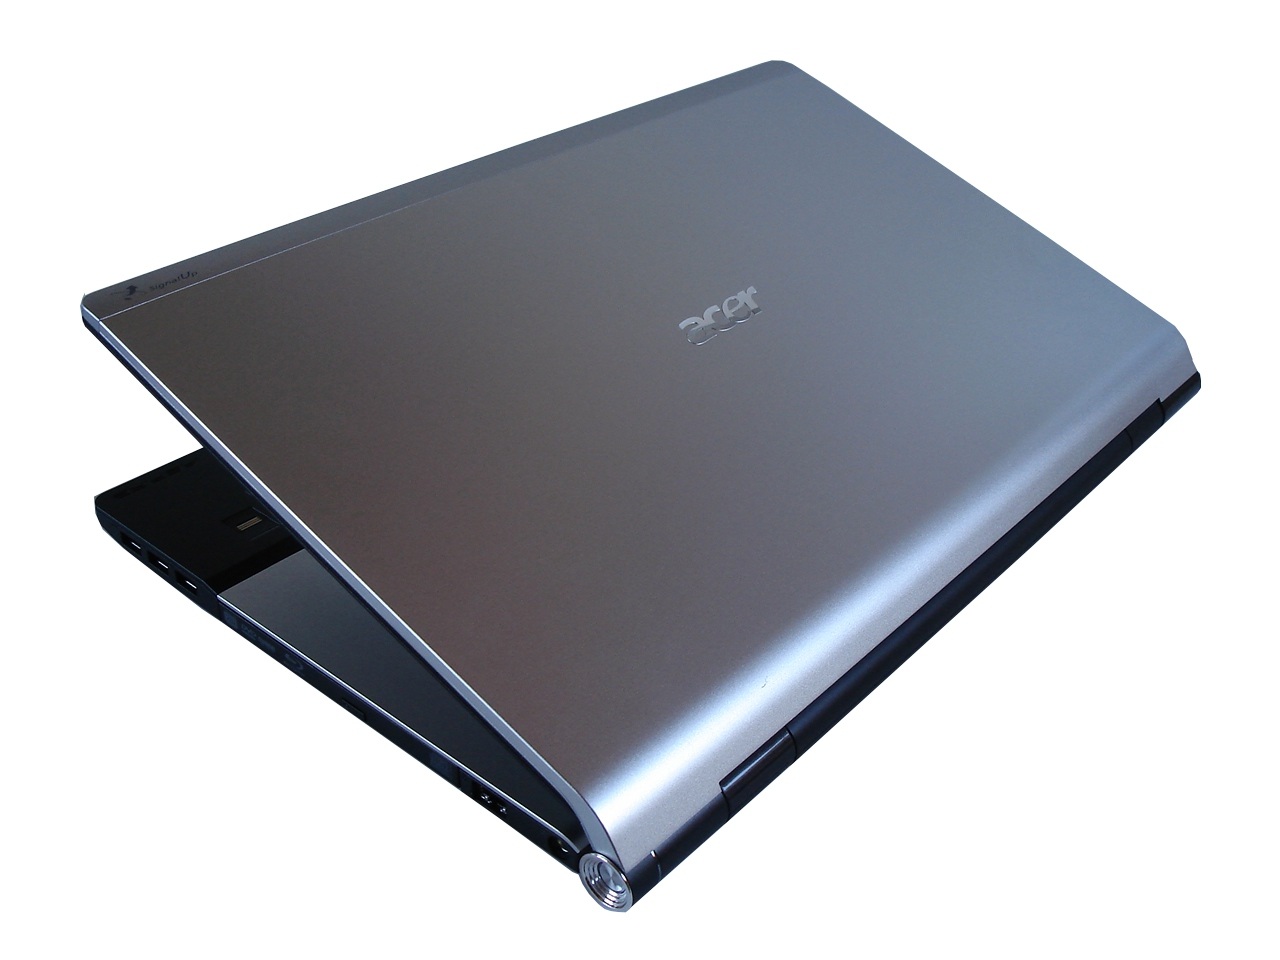 Ноутбук в металлическом корпусе. Acer 8950g. Acer Aspire Ethos 8950g. Ноутбук Acer SIGNALUP. Acer Aspire 7560g крышка.